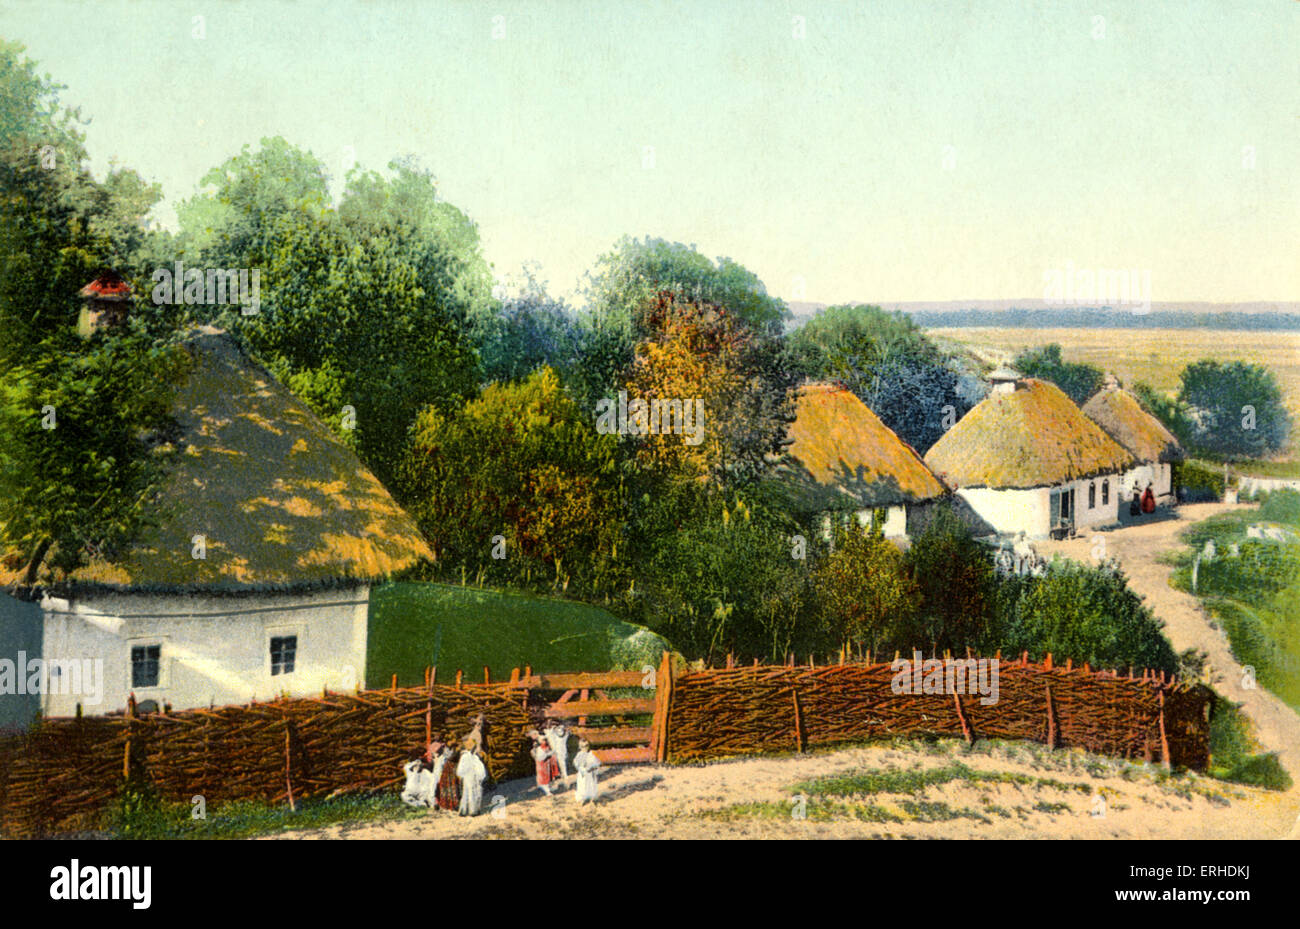 Ukrainian Village avec maisons d'Adobe. Carte postale peinture. Révolution Pre-Bolshevik. Au début du xxe siècle l'Ukraine / Russie. Banque D'Images